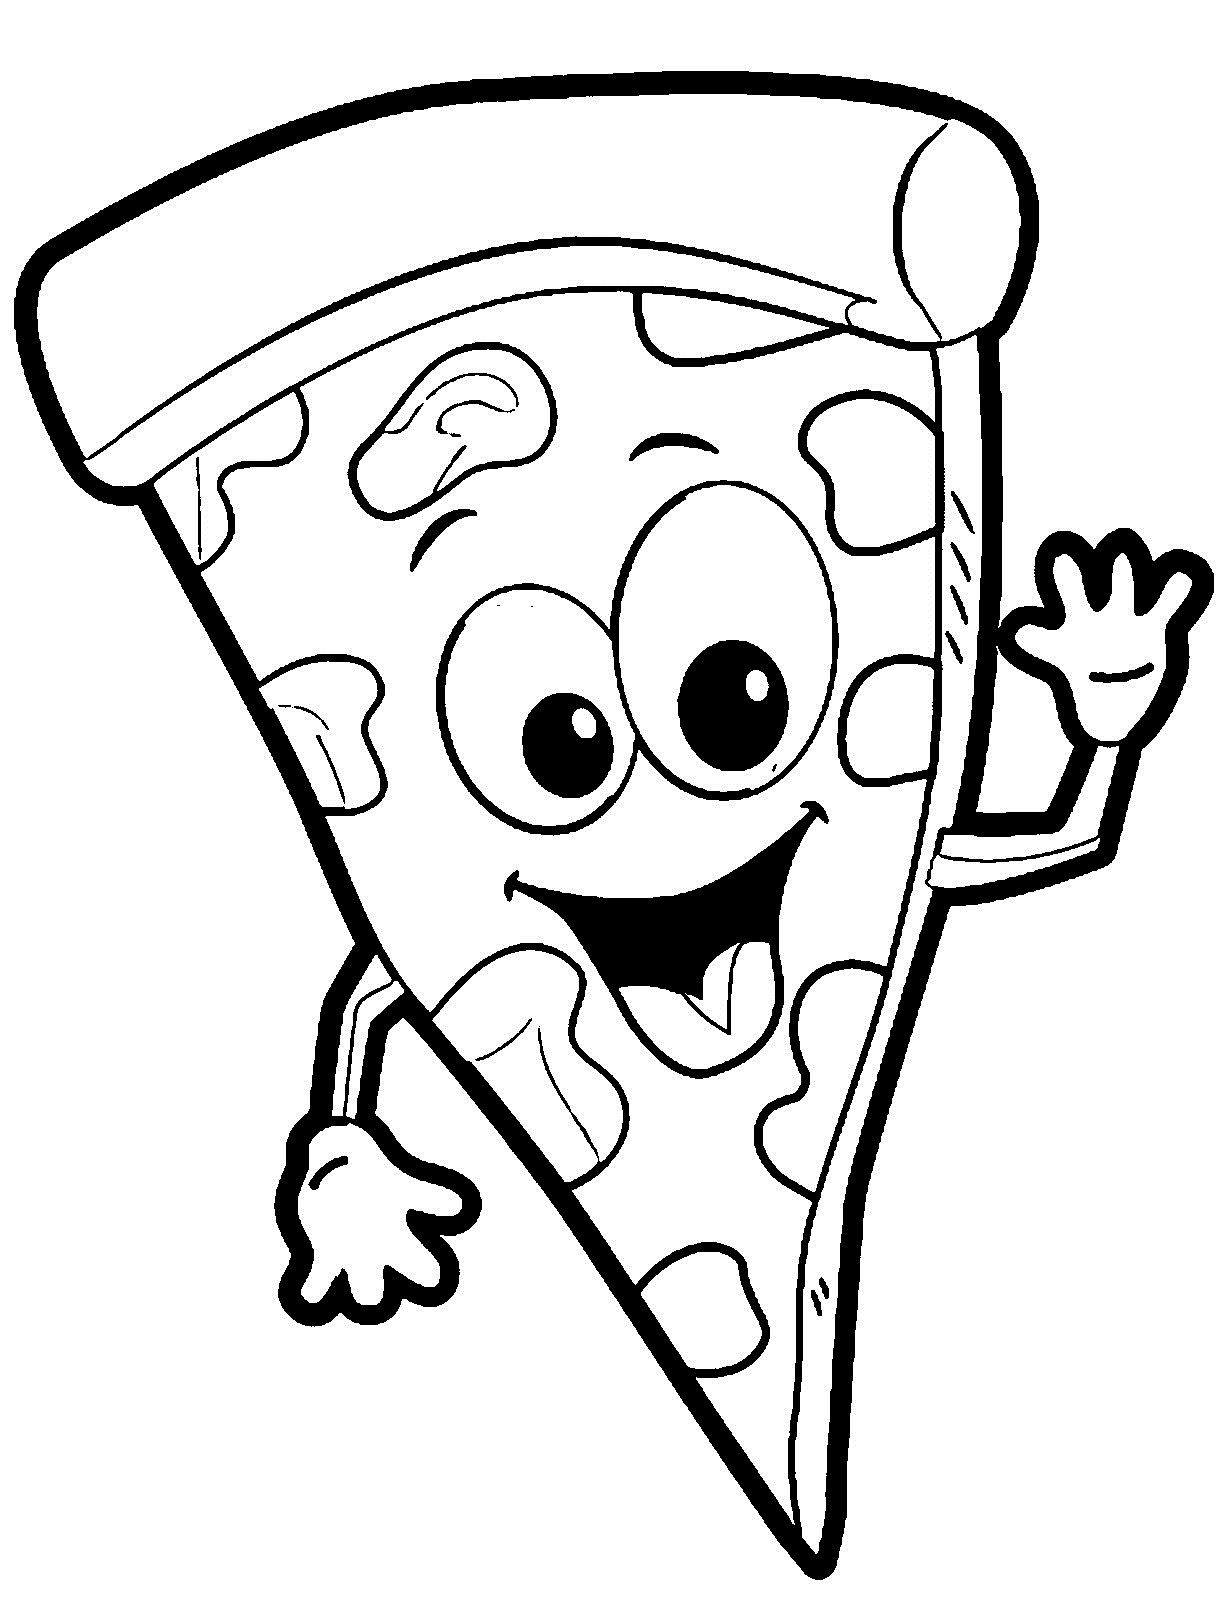 Pizza Malvorlagen - Kostenlose druckbare Malvorlagen für Kinder